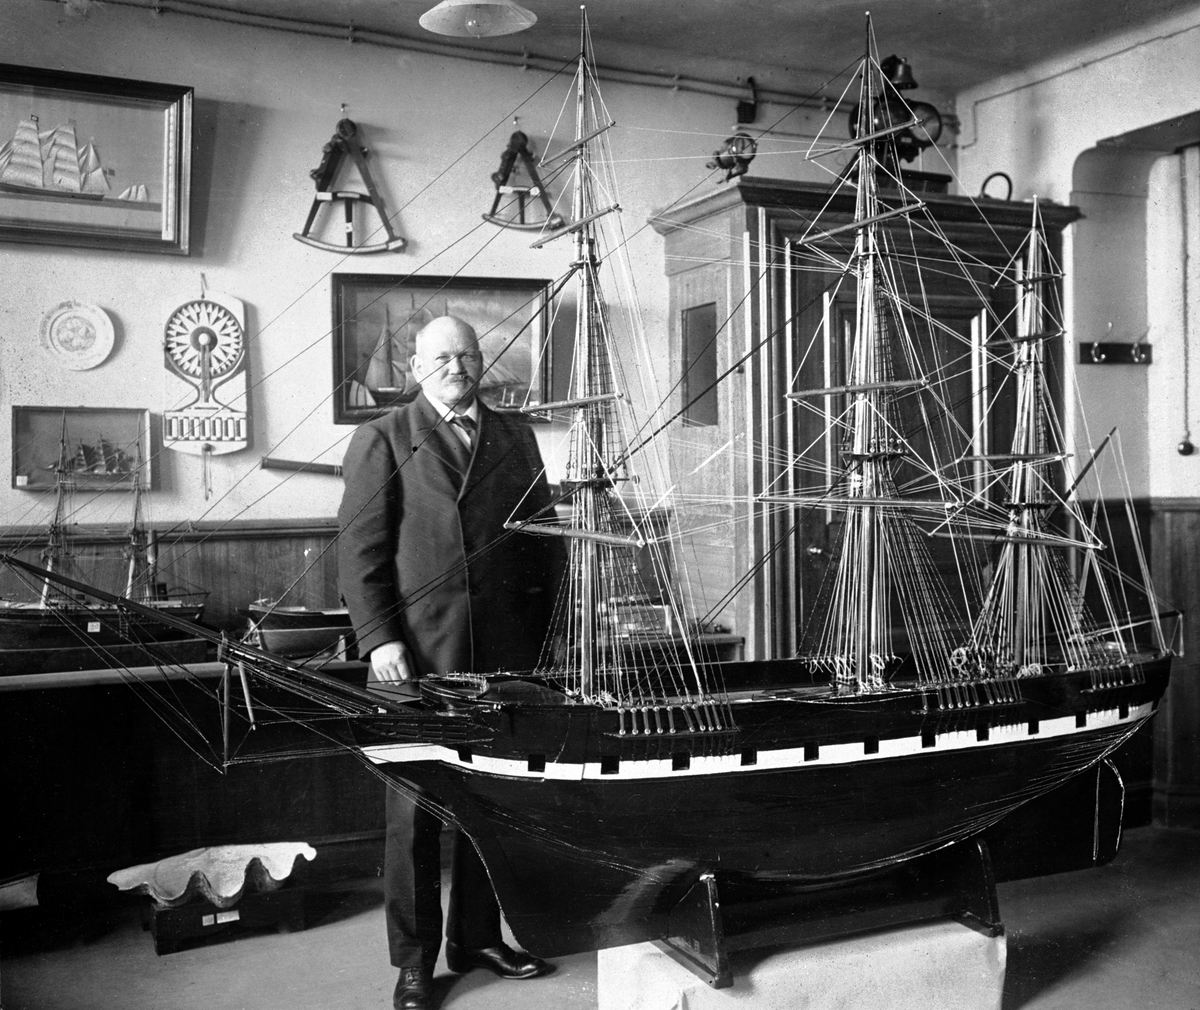 Interiör från Sjöfartsmuseet. Kapten Pettersson bredvid en fartygsmodell.